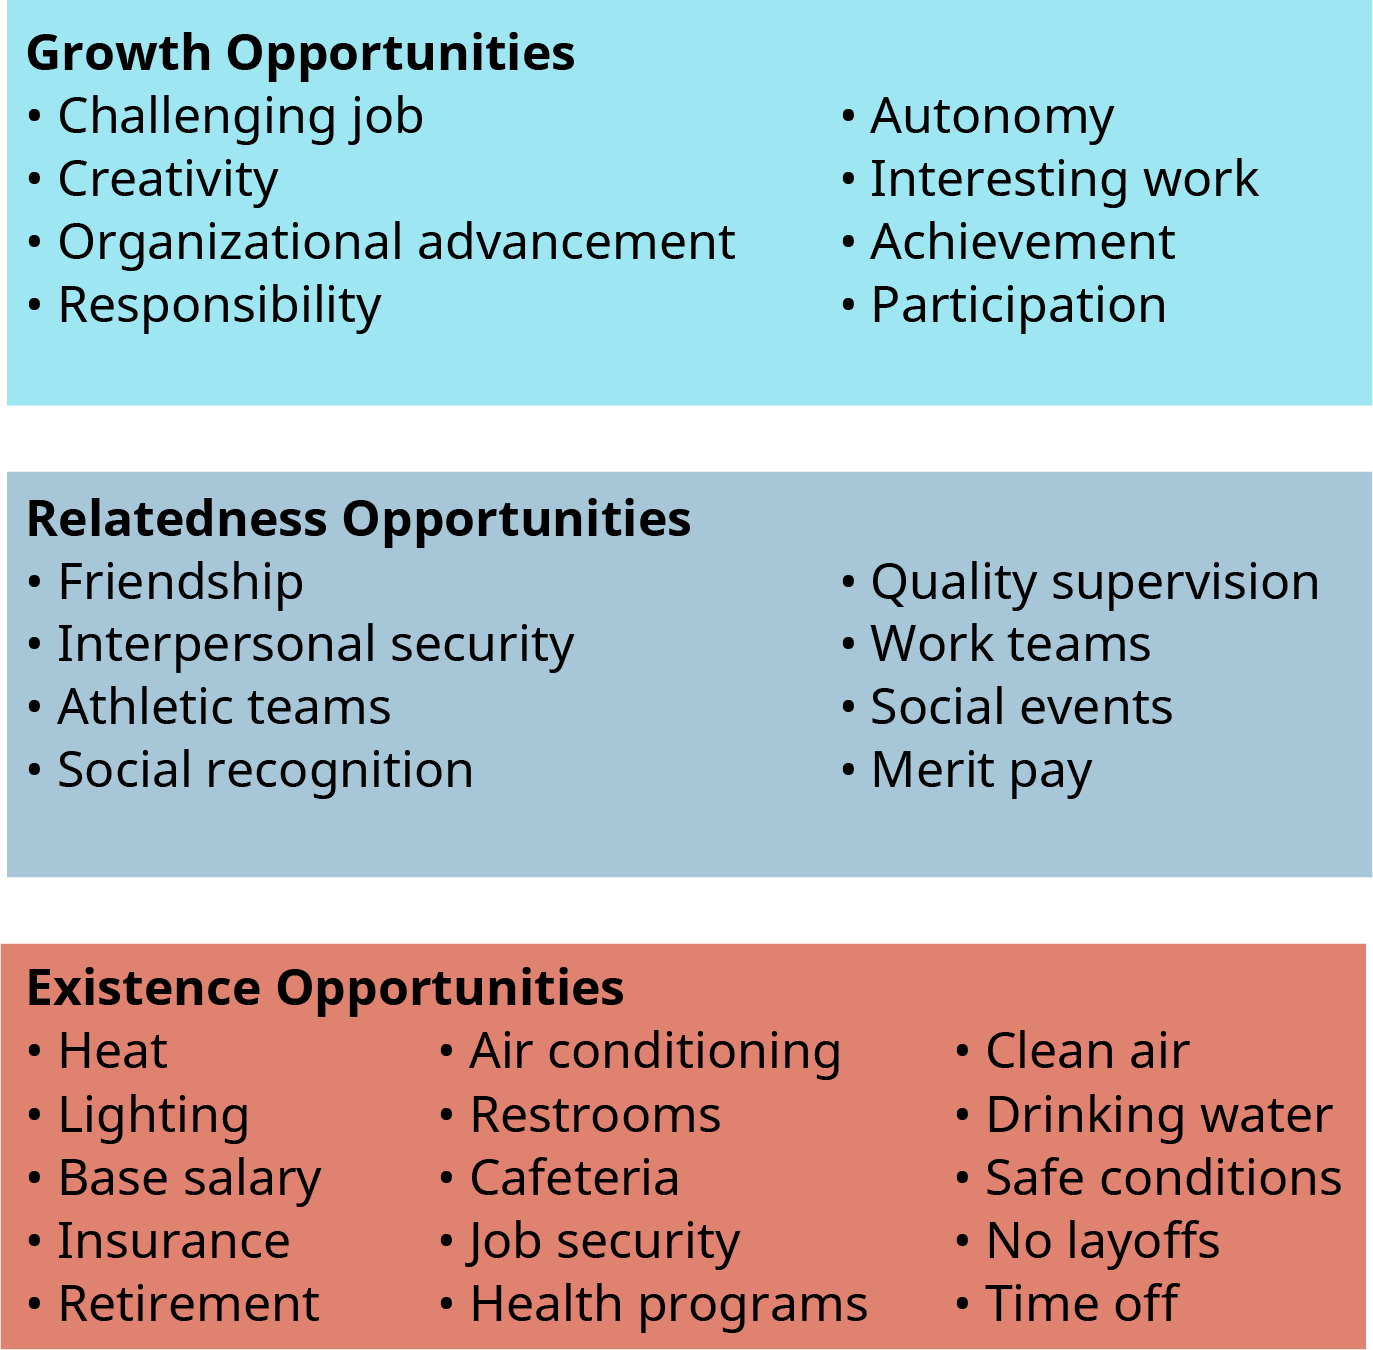 一幅插图显示了各组织可以帮助其成员满足三种需求的各种方式。 自下而上，需求是存在需求、关联性需求和增长需求。